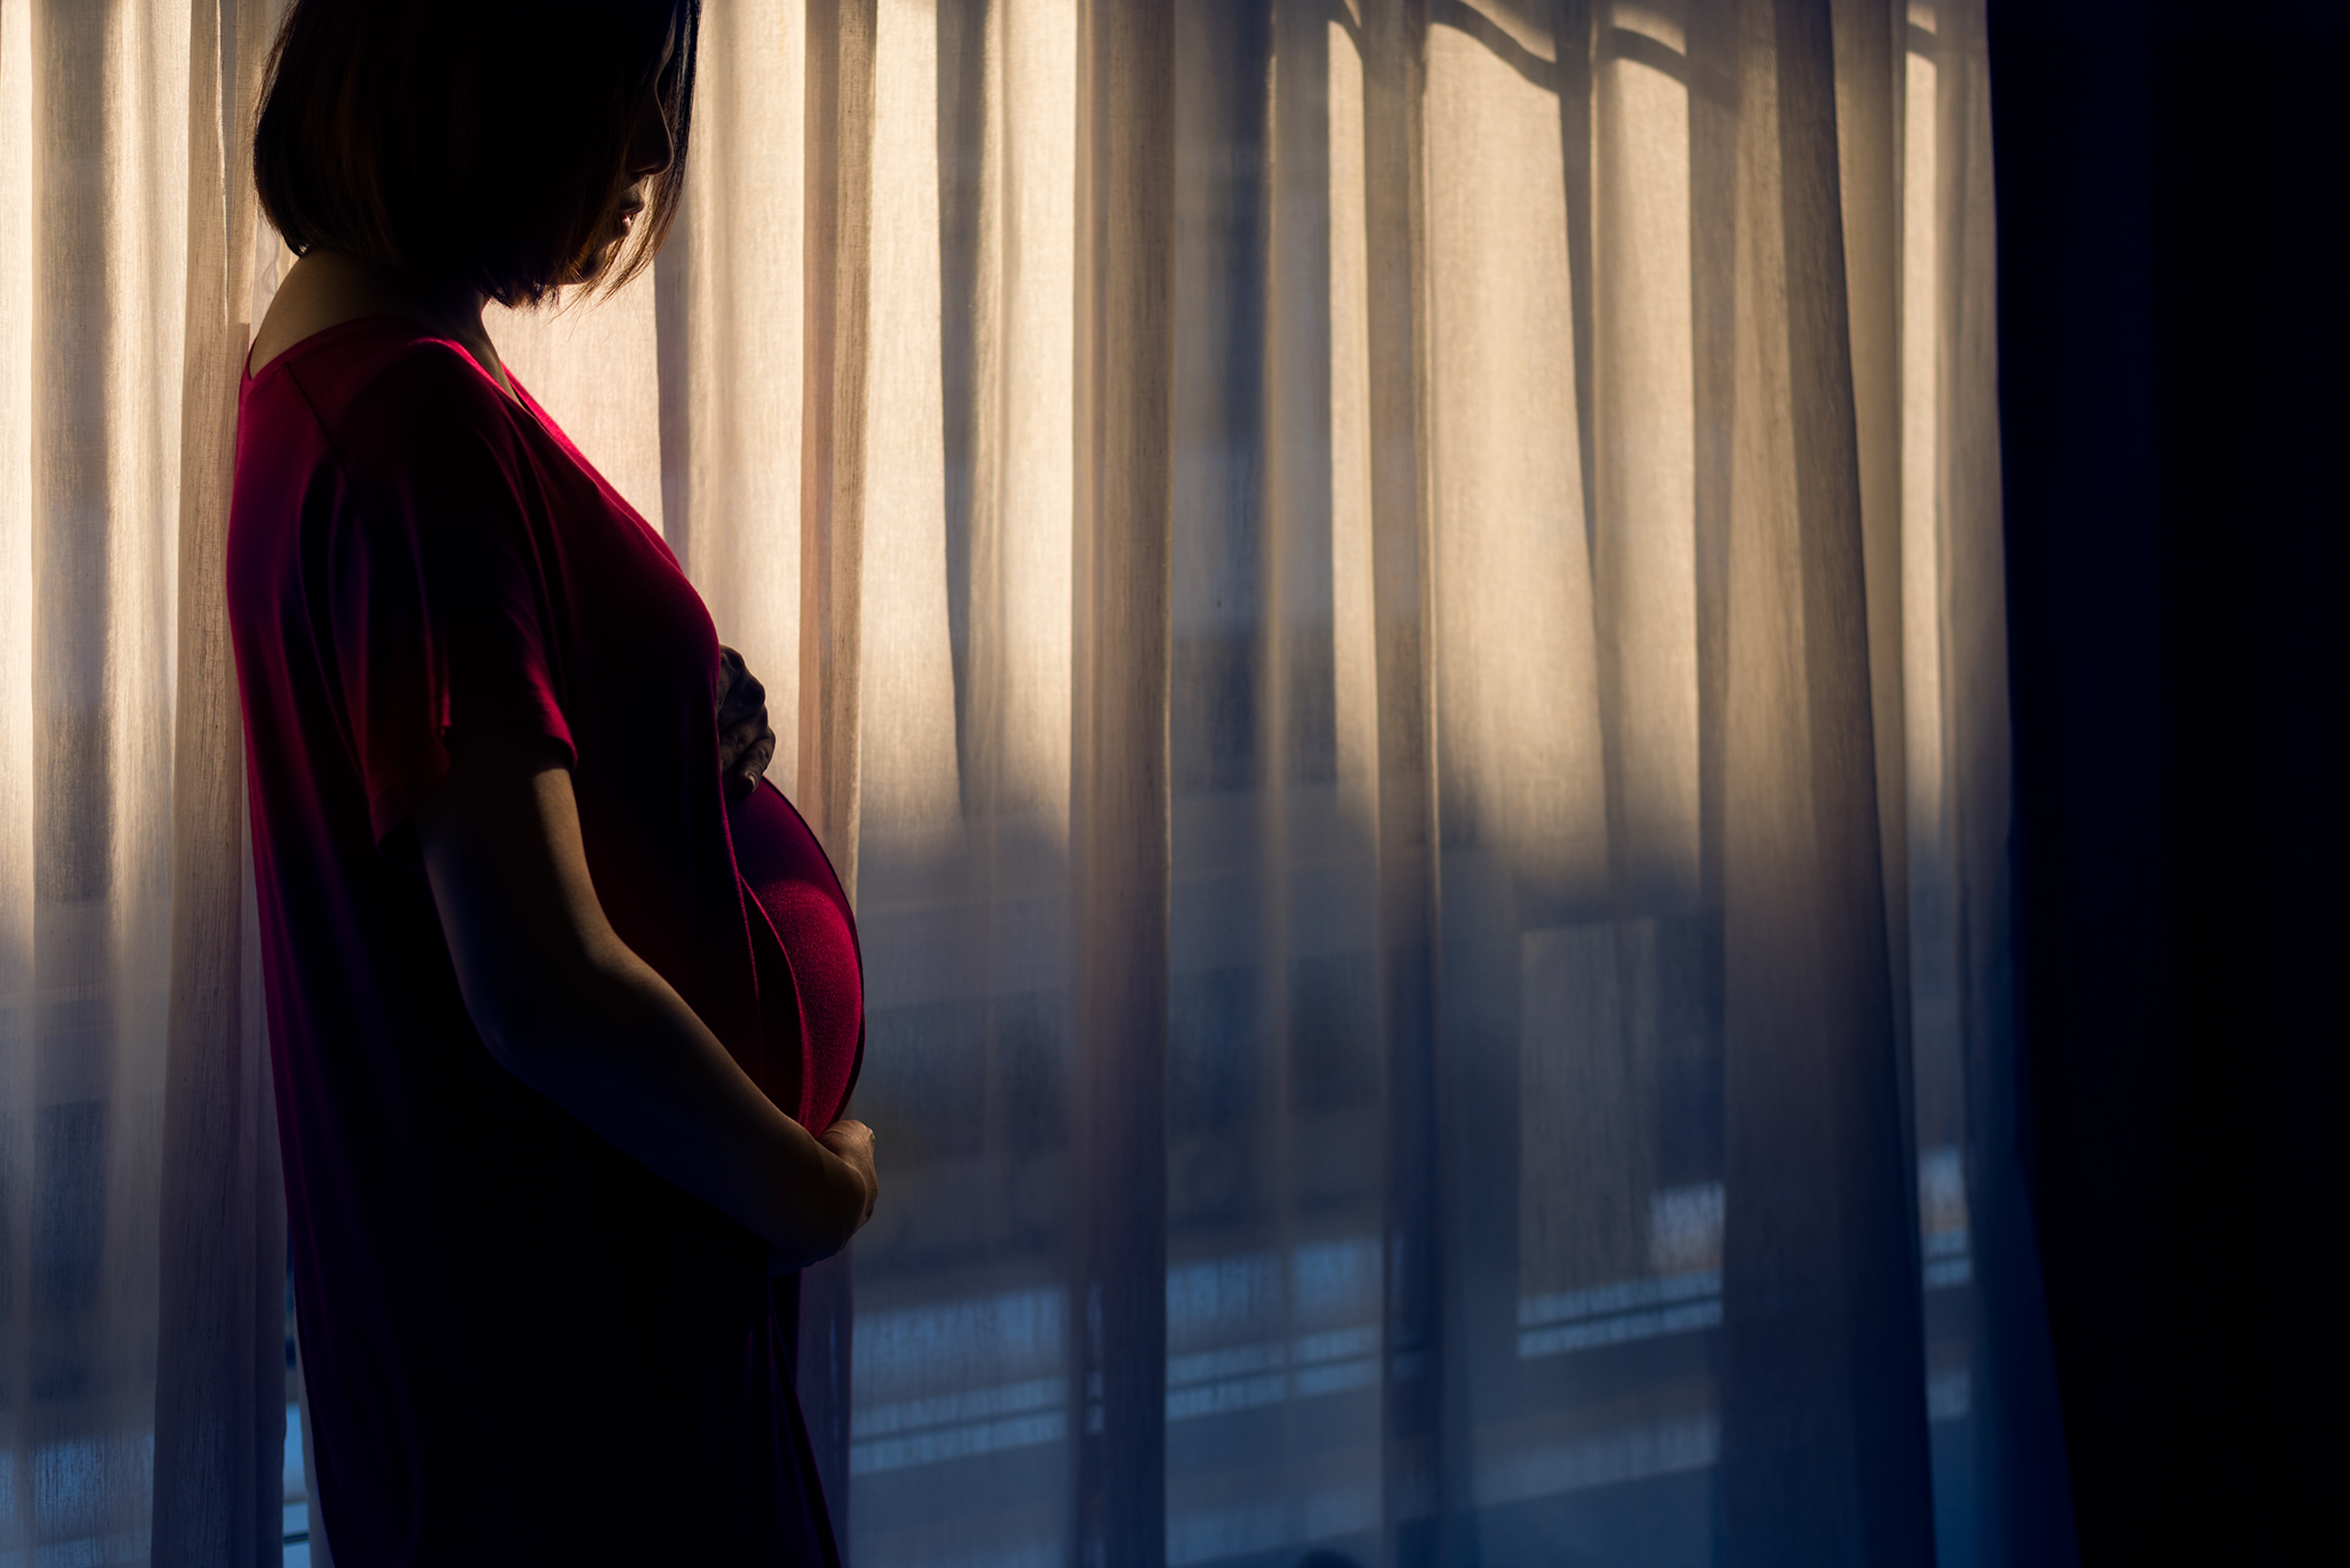 Mujer embarazada ama la alegría de ser madre | Fuente: Shutterstock.com